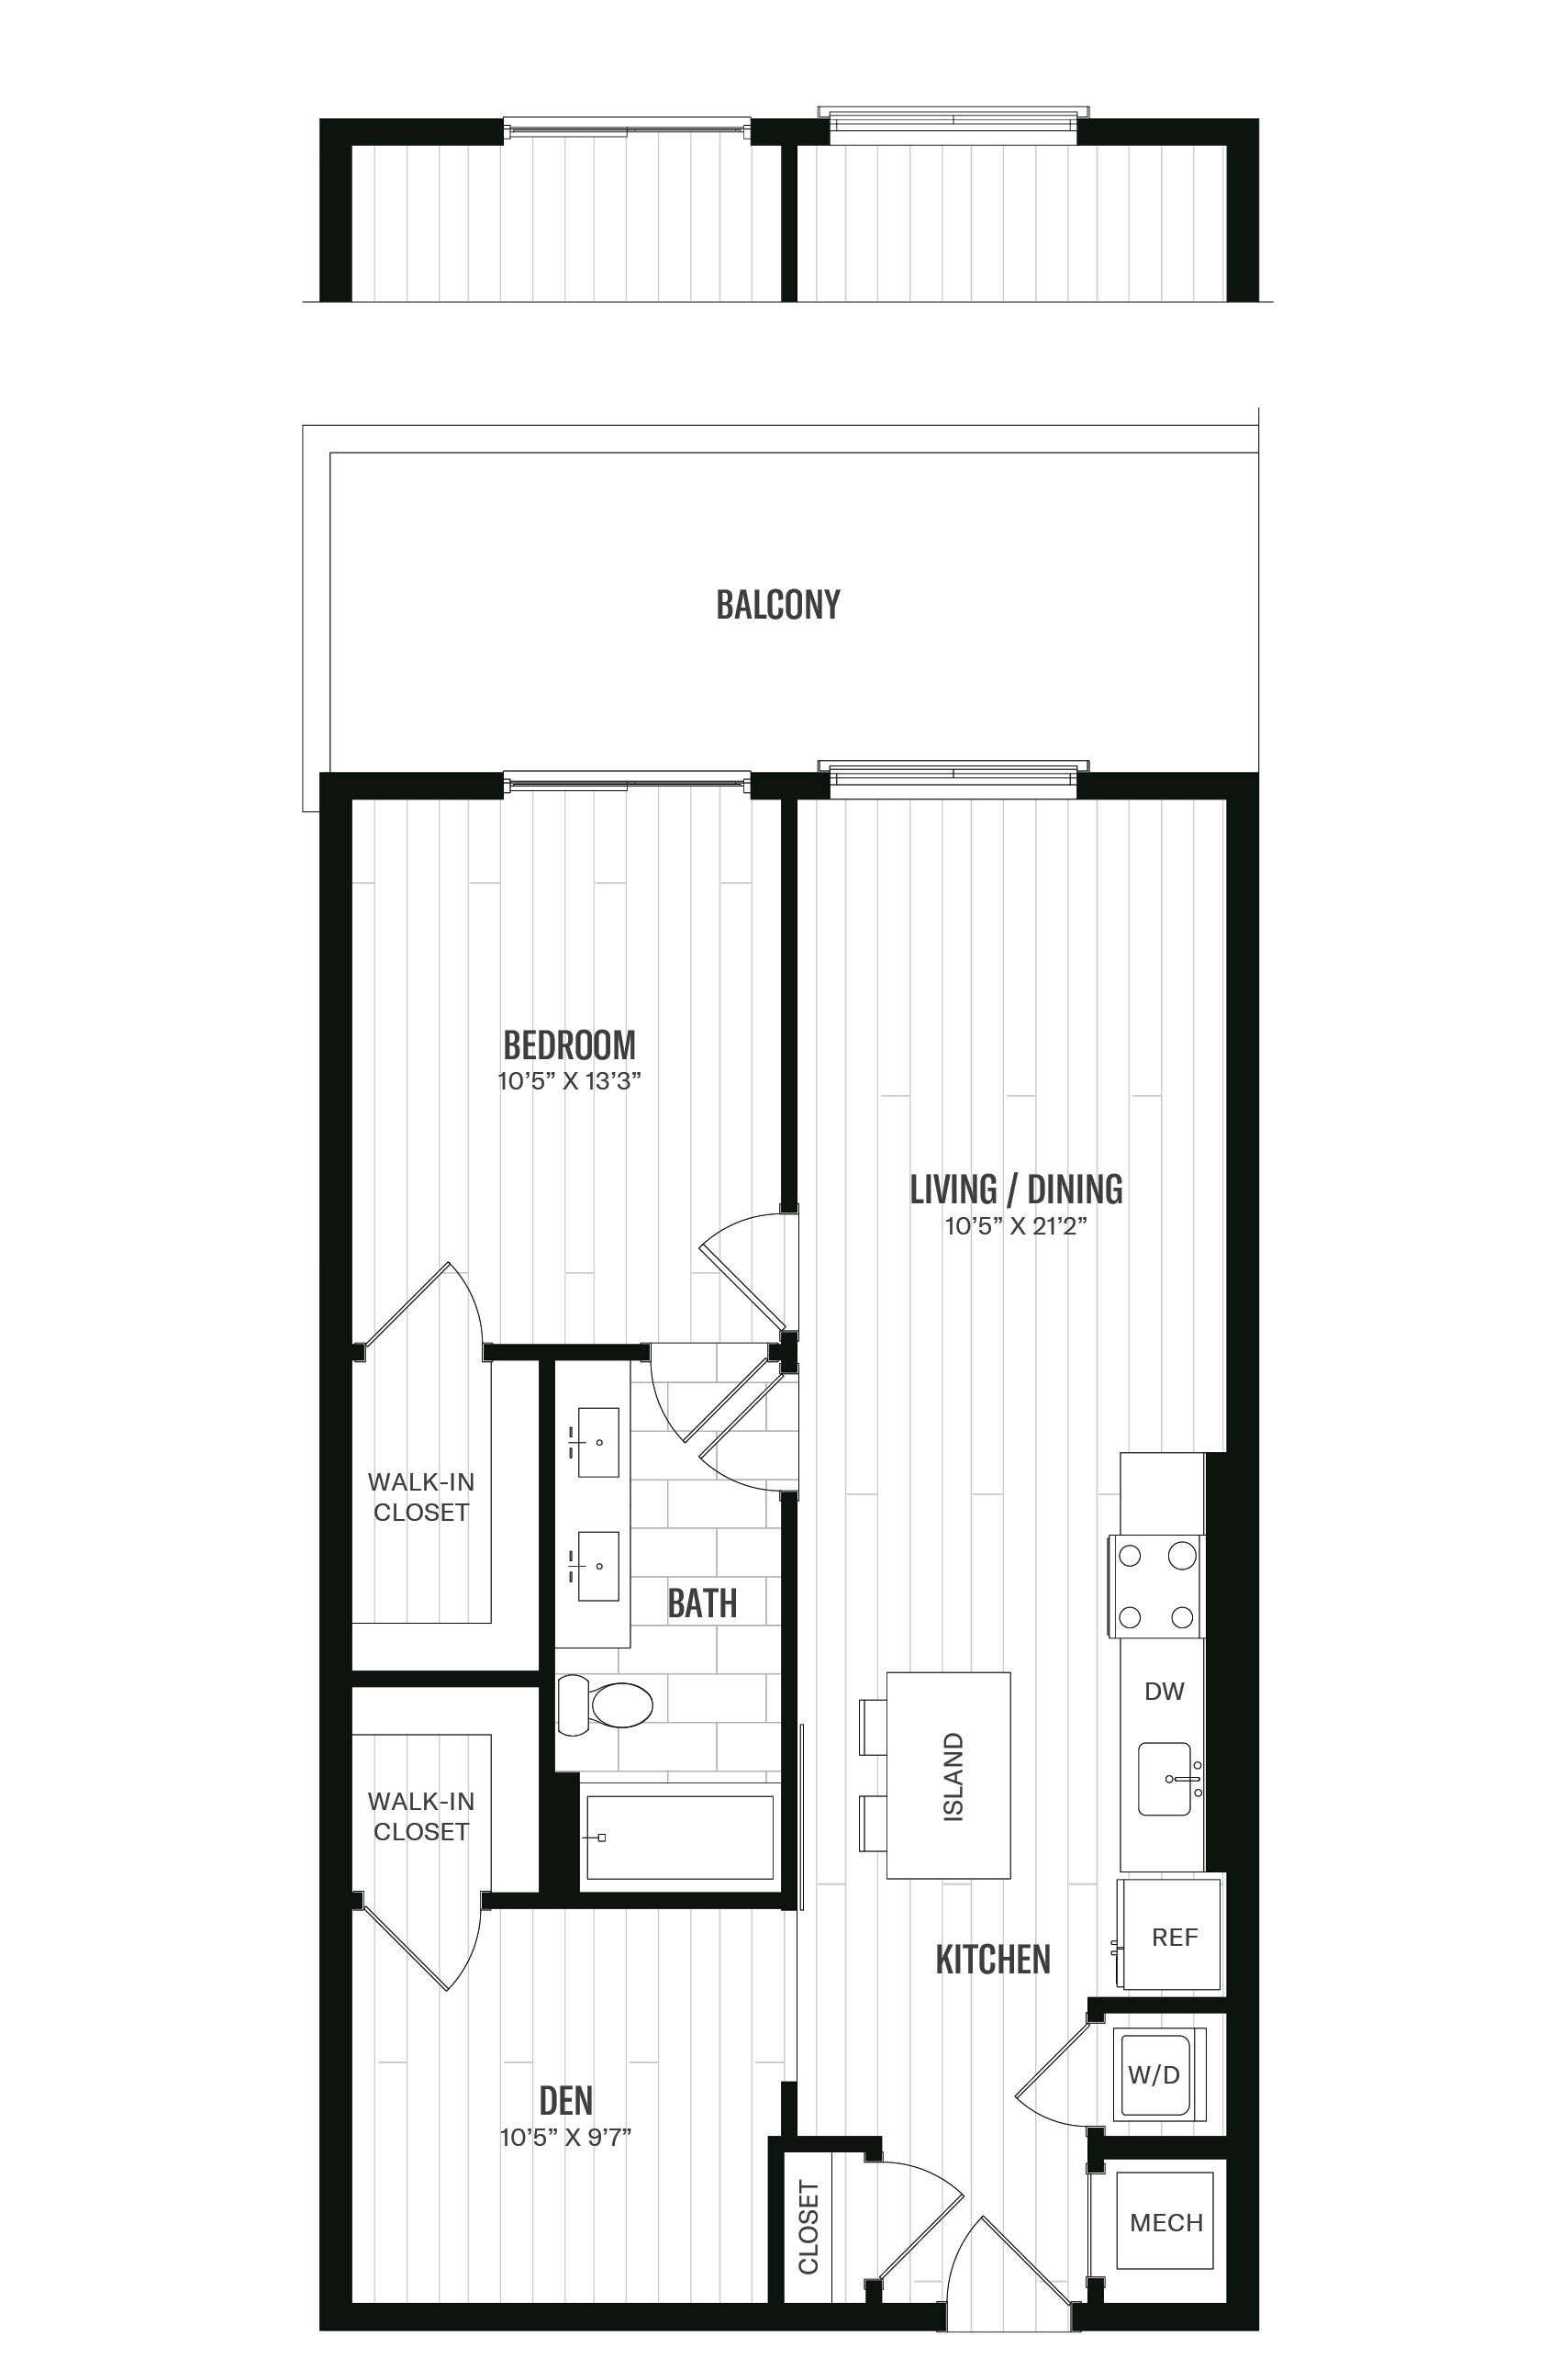 Floorplan image of unit 229